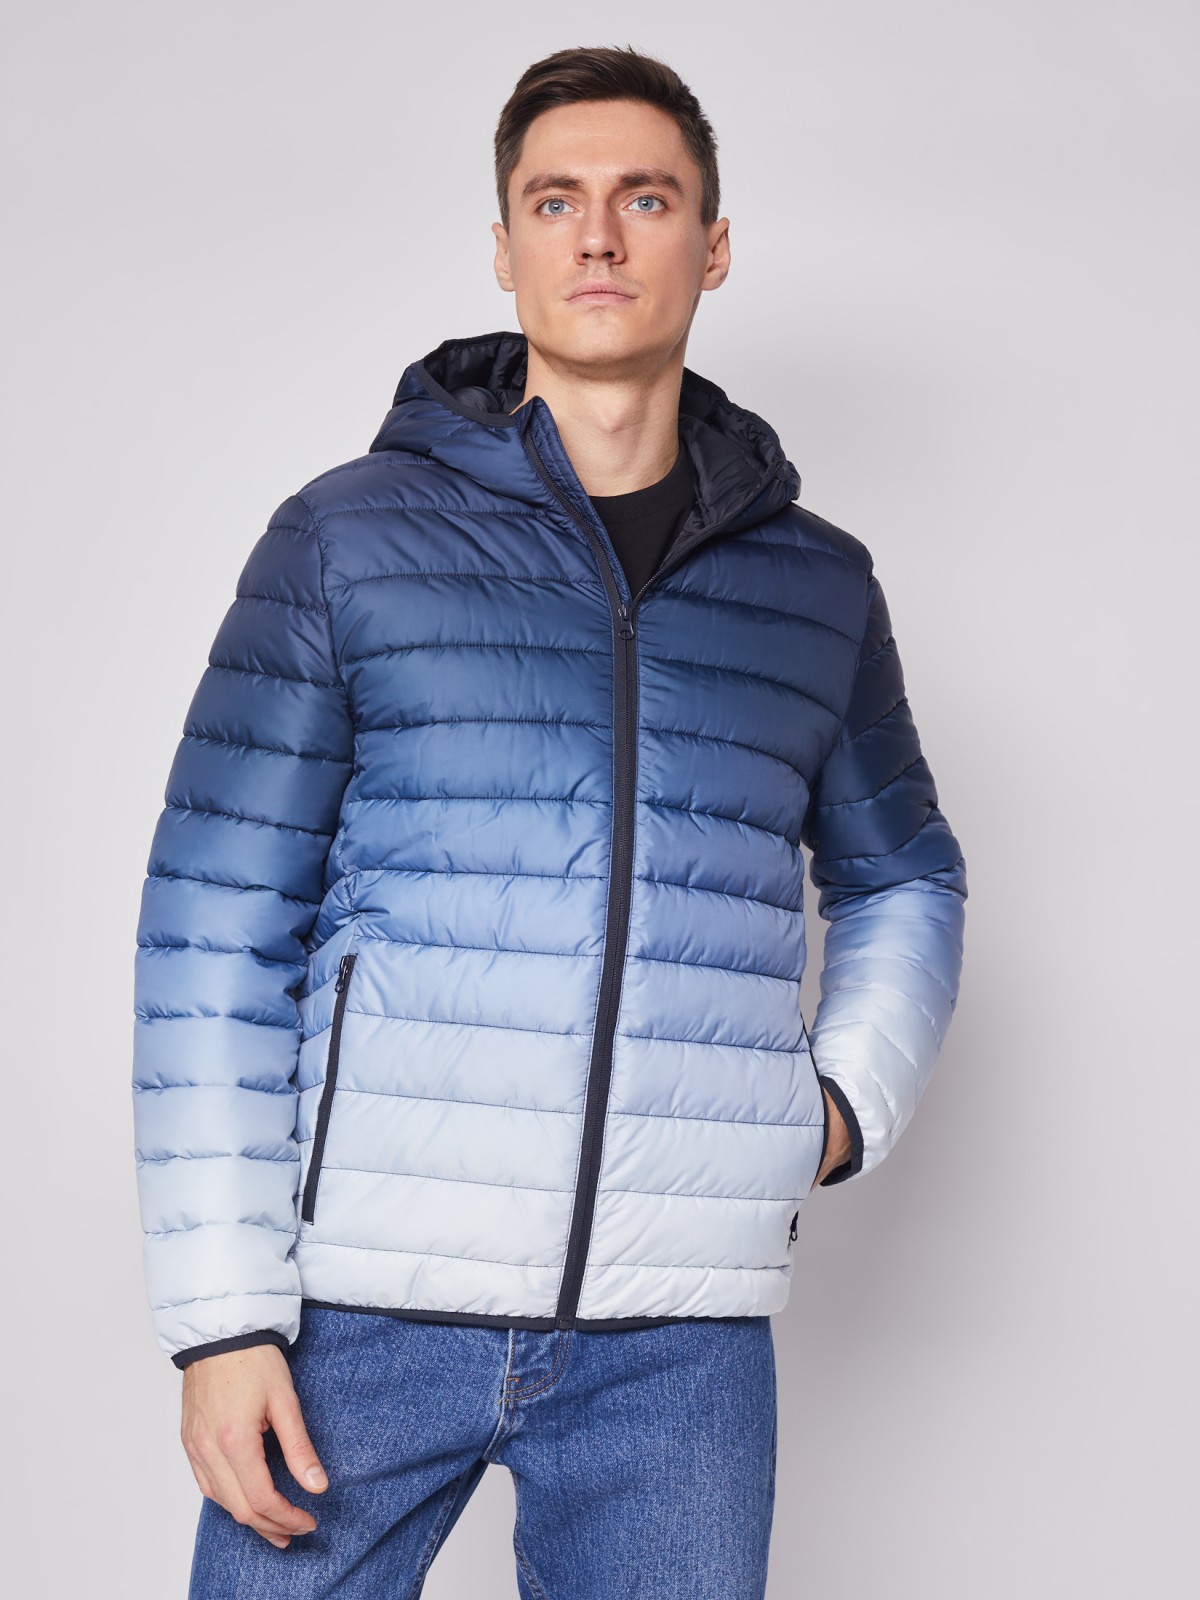 Утеплённая куртка с капюшоном zolla 012125102104, цвет голубой, размер M - фото 2